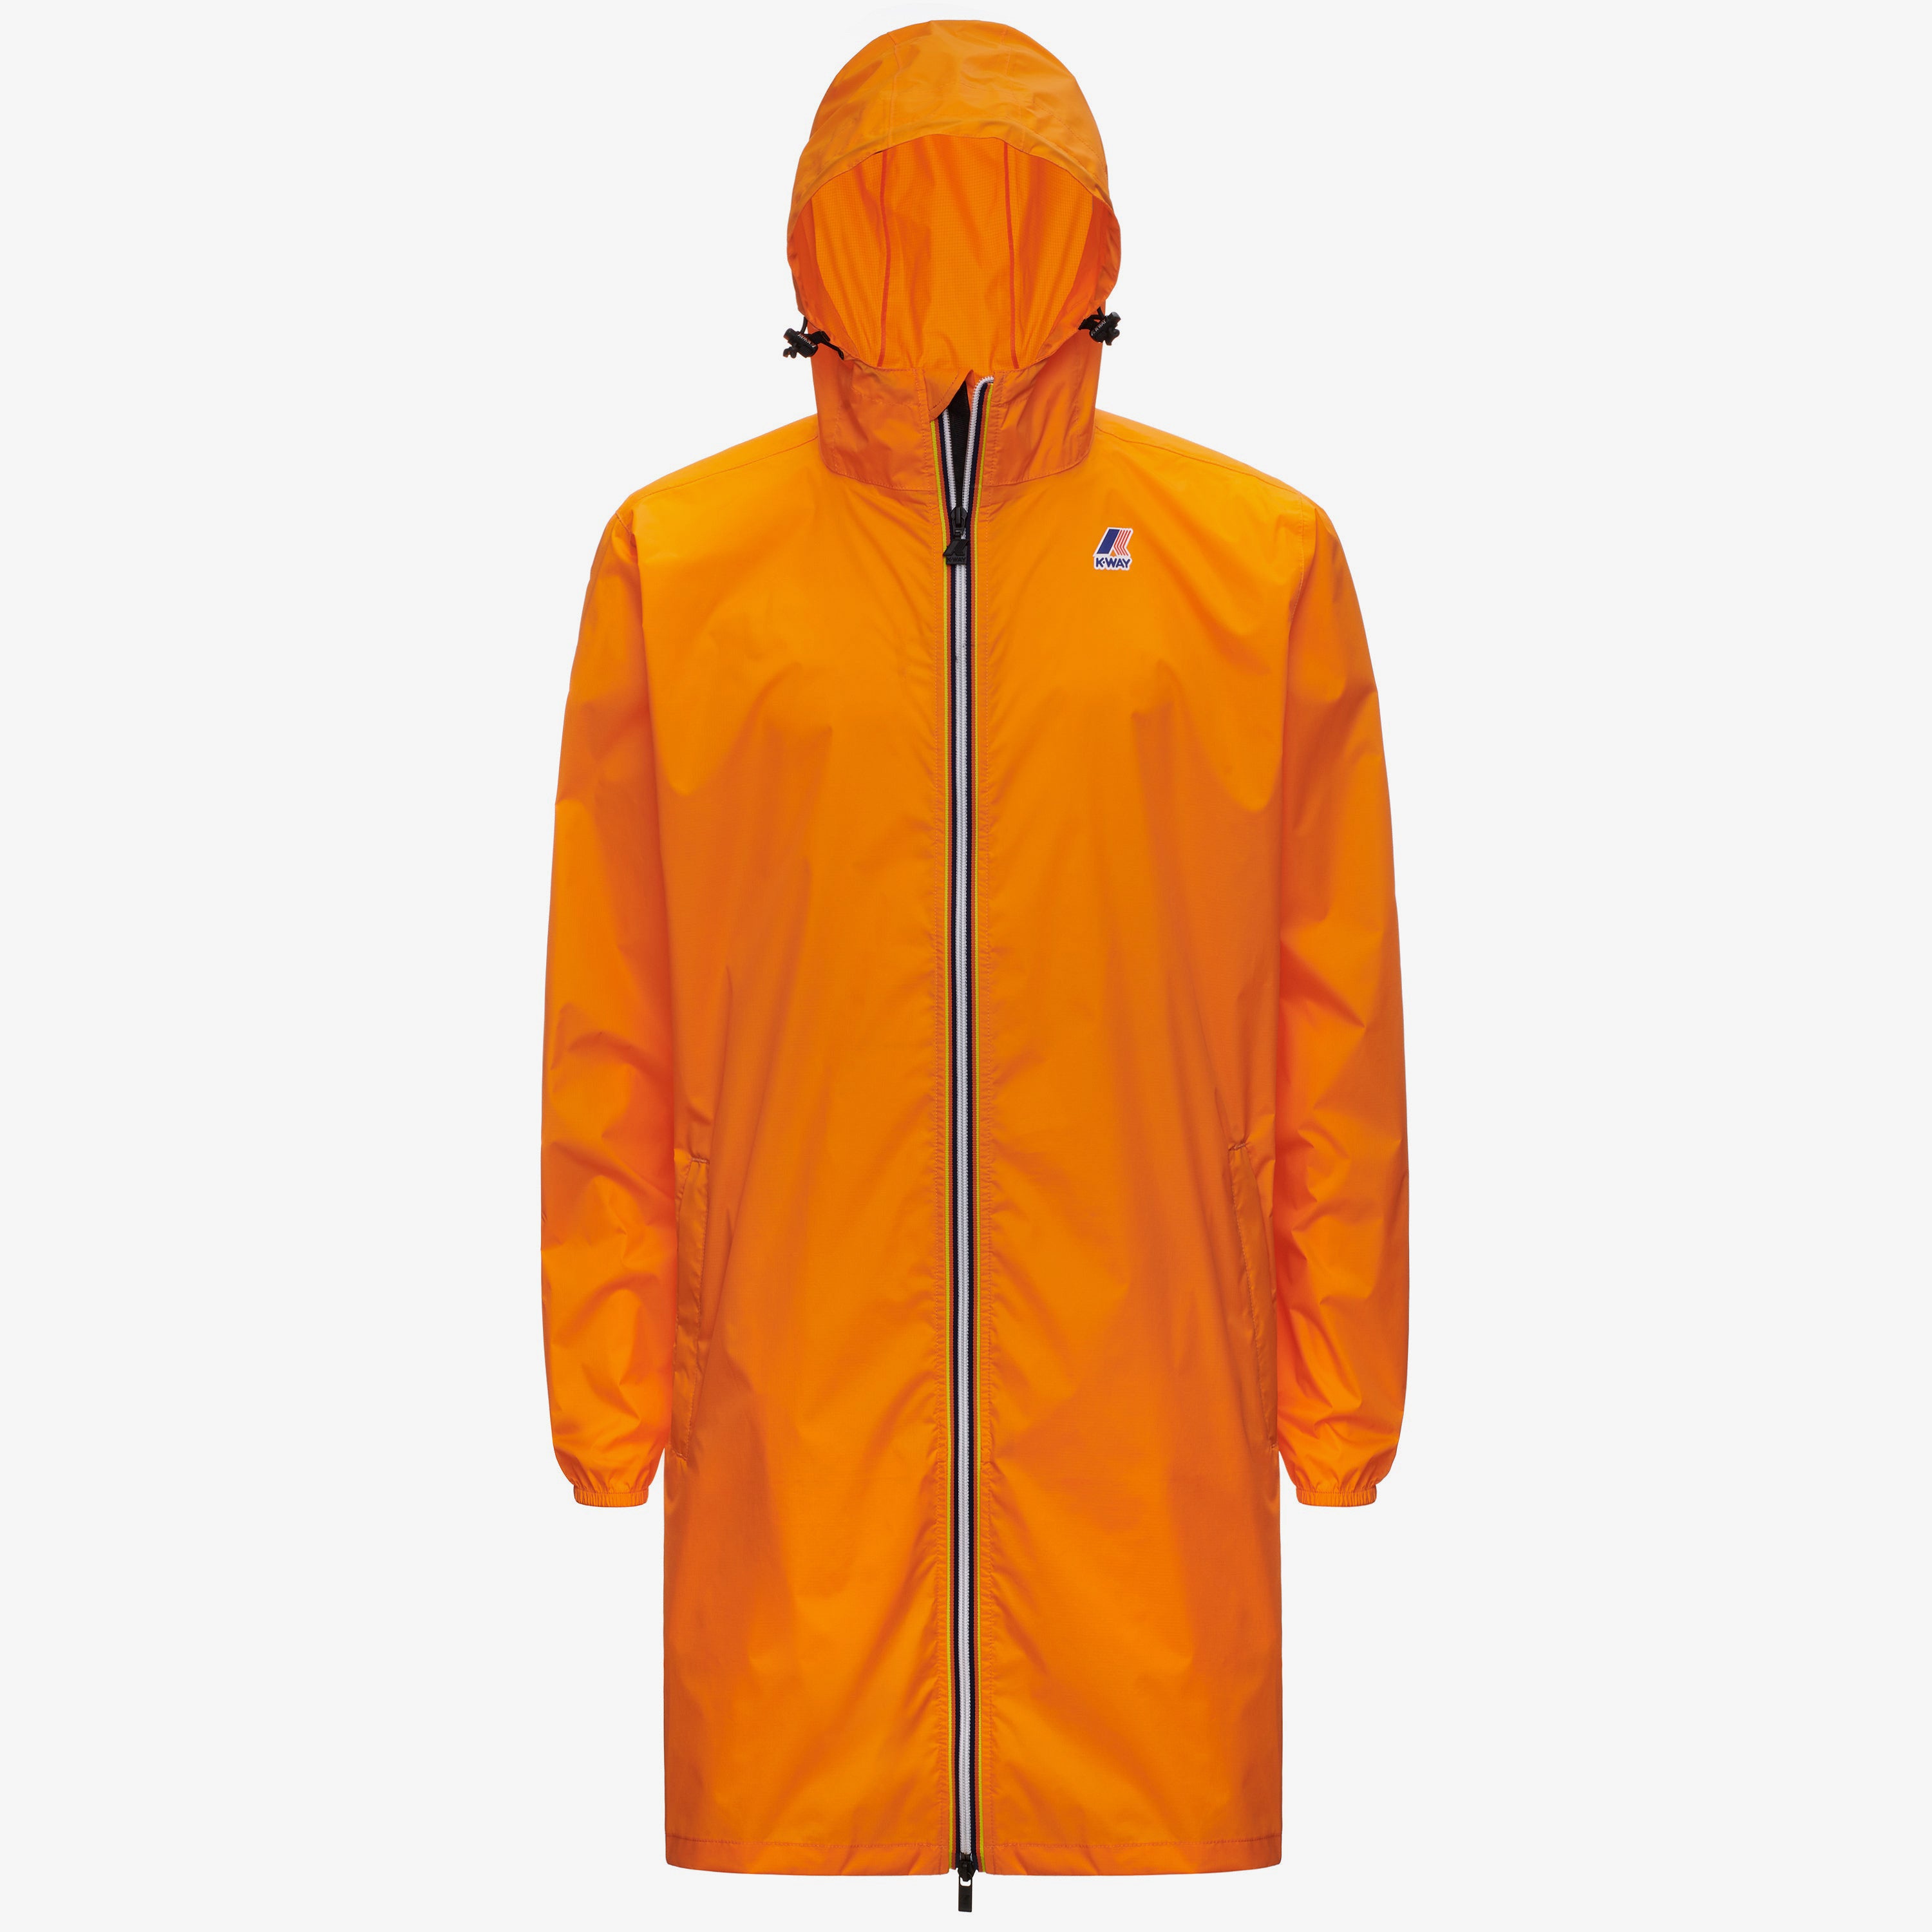 Eiffel - Unisex Waterproof Packable Long Rain Jacket in Orange